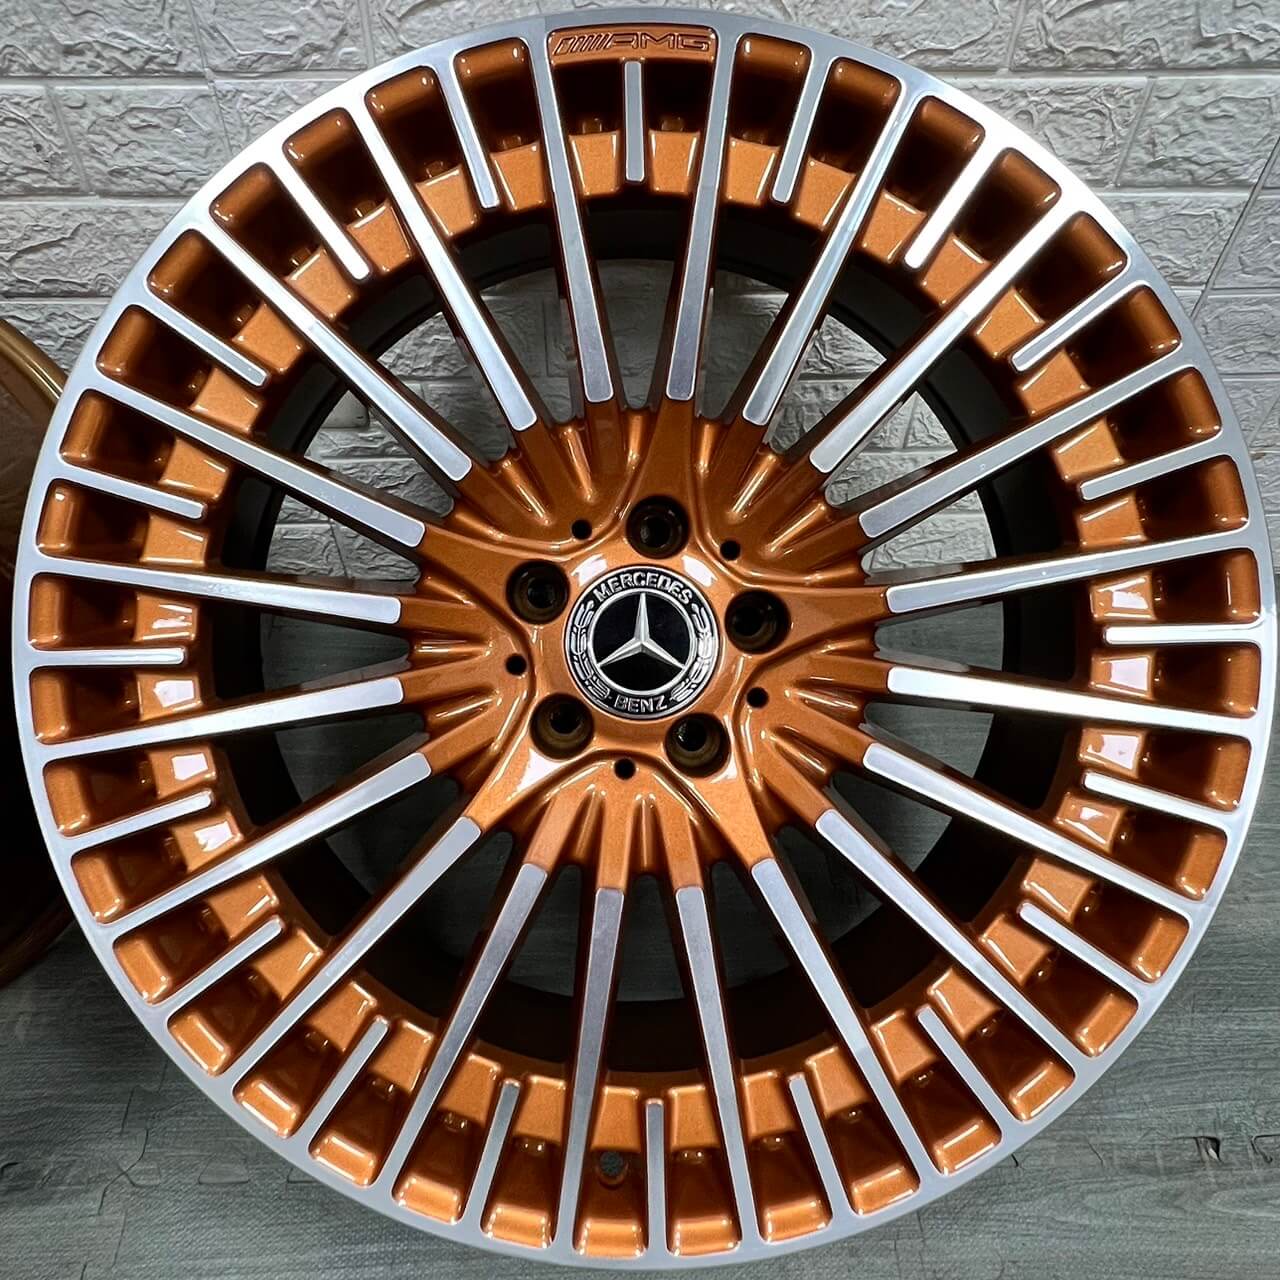 銪良心鋁圈輪胎的AMG賓士原廠鋁圈專區圖片